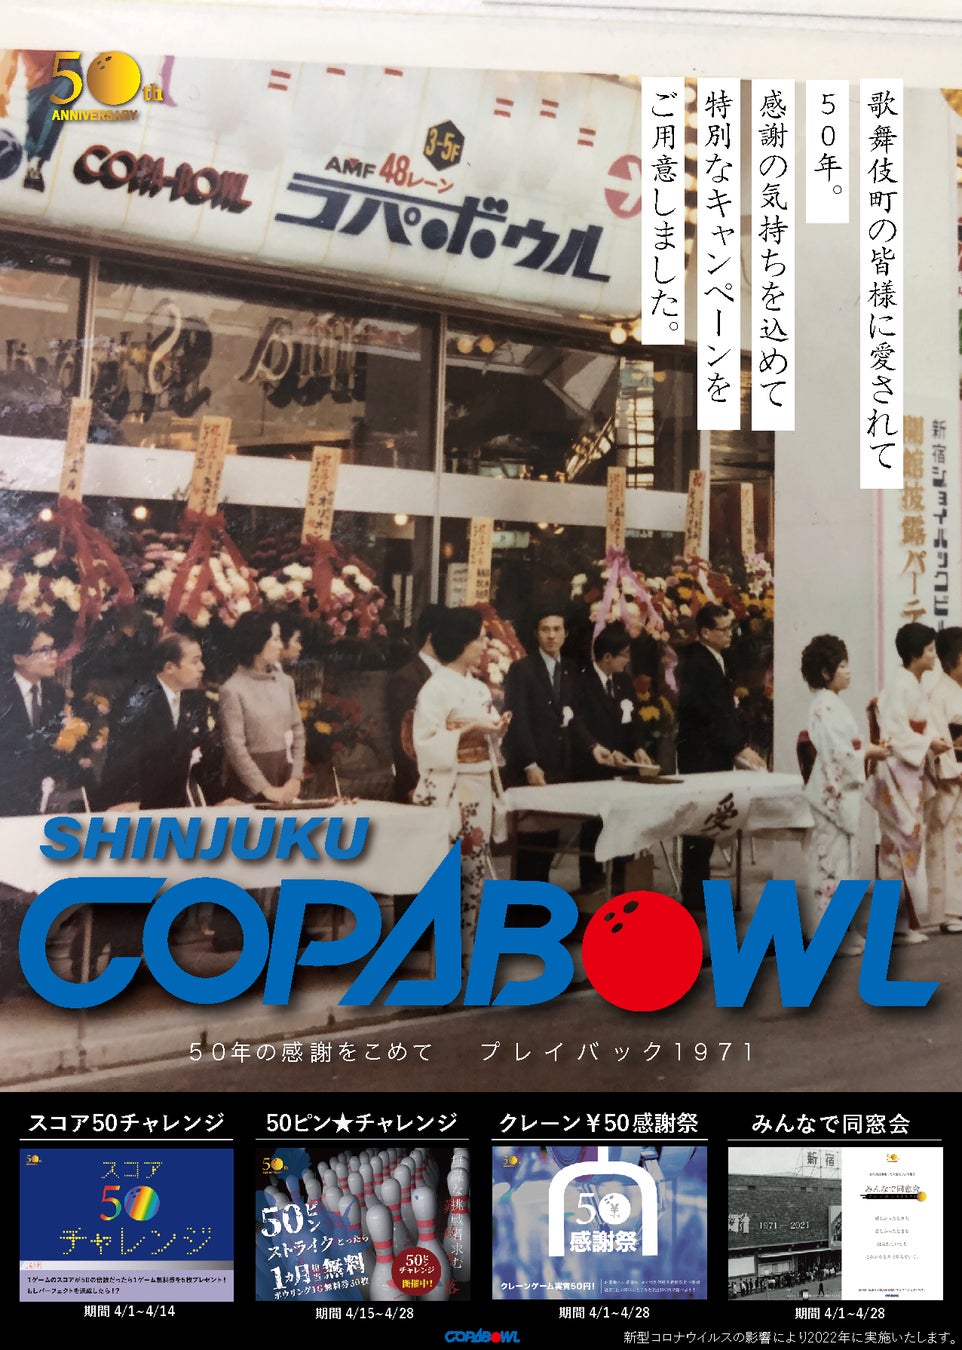 ボウリングのピンが50本に!?新宿コパボウル開店50周年イベント「50年の感謝をこめて プレイバック1971」開催